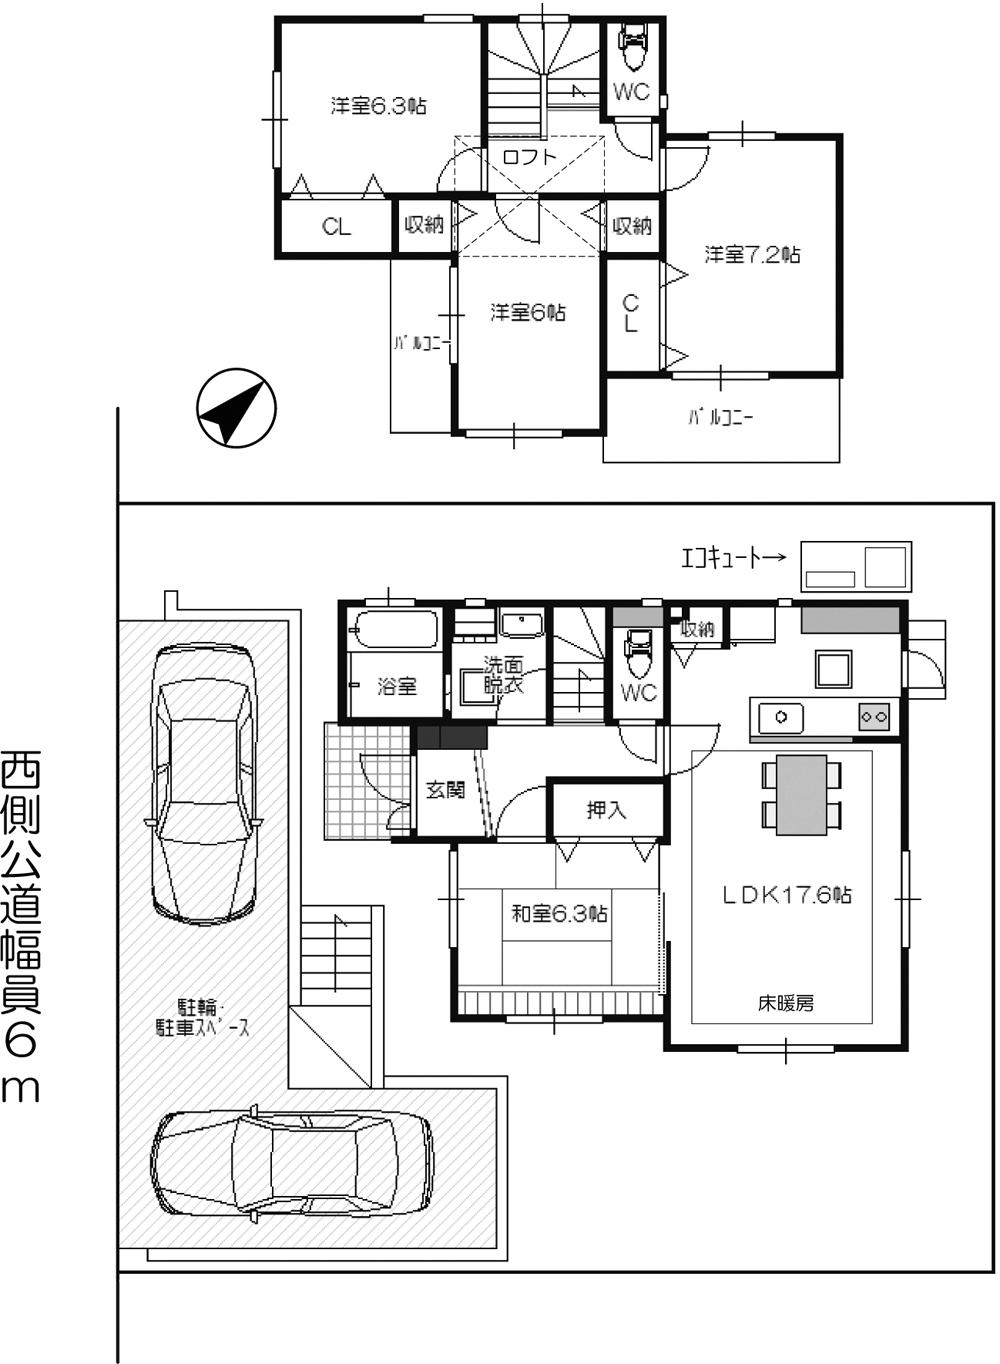 Floor plan. 28.8 million yen, 4LDK + S (storeroom), Land area 191.39 sq m , Building area 107.5 sq m floor plan drawings